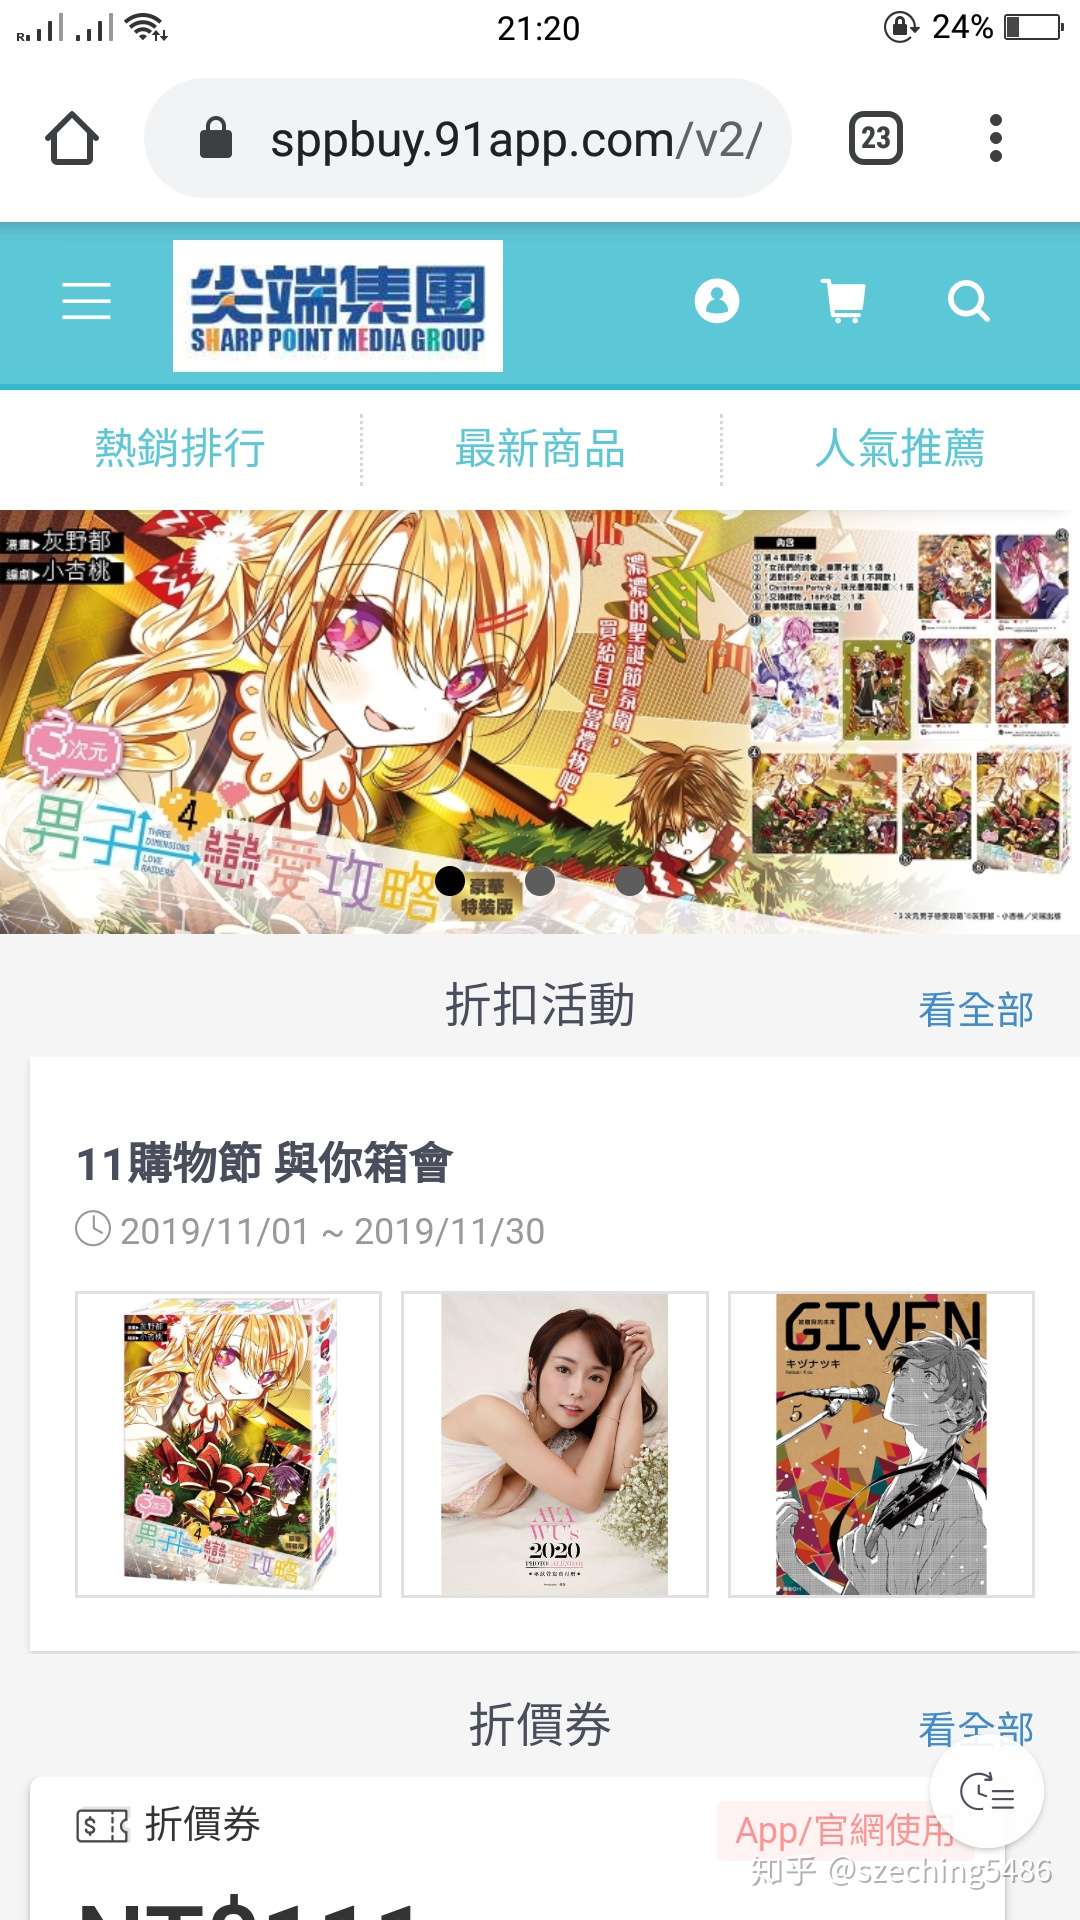 台湾bl 男男 漫画 小说书籍出版社 网络购买渠道和通路 知乎